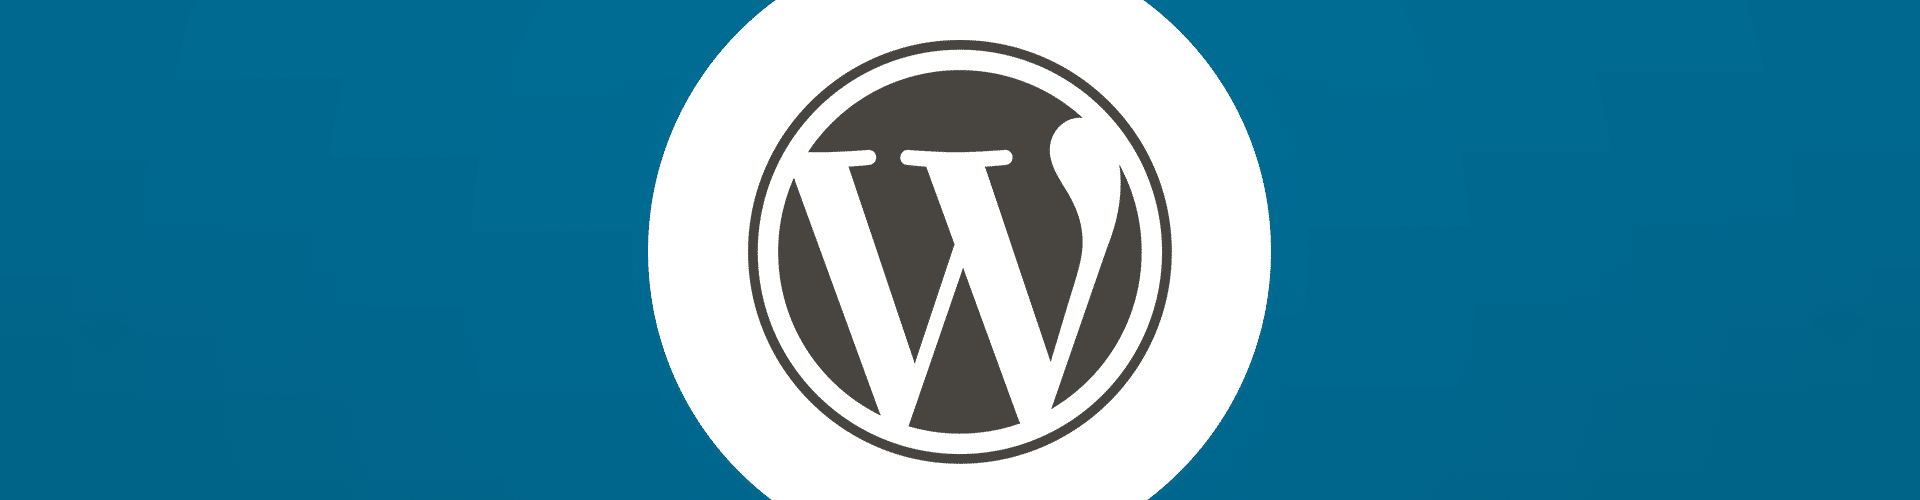 Wie funktioniert Internationalisierung mit WordPress?